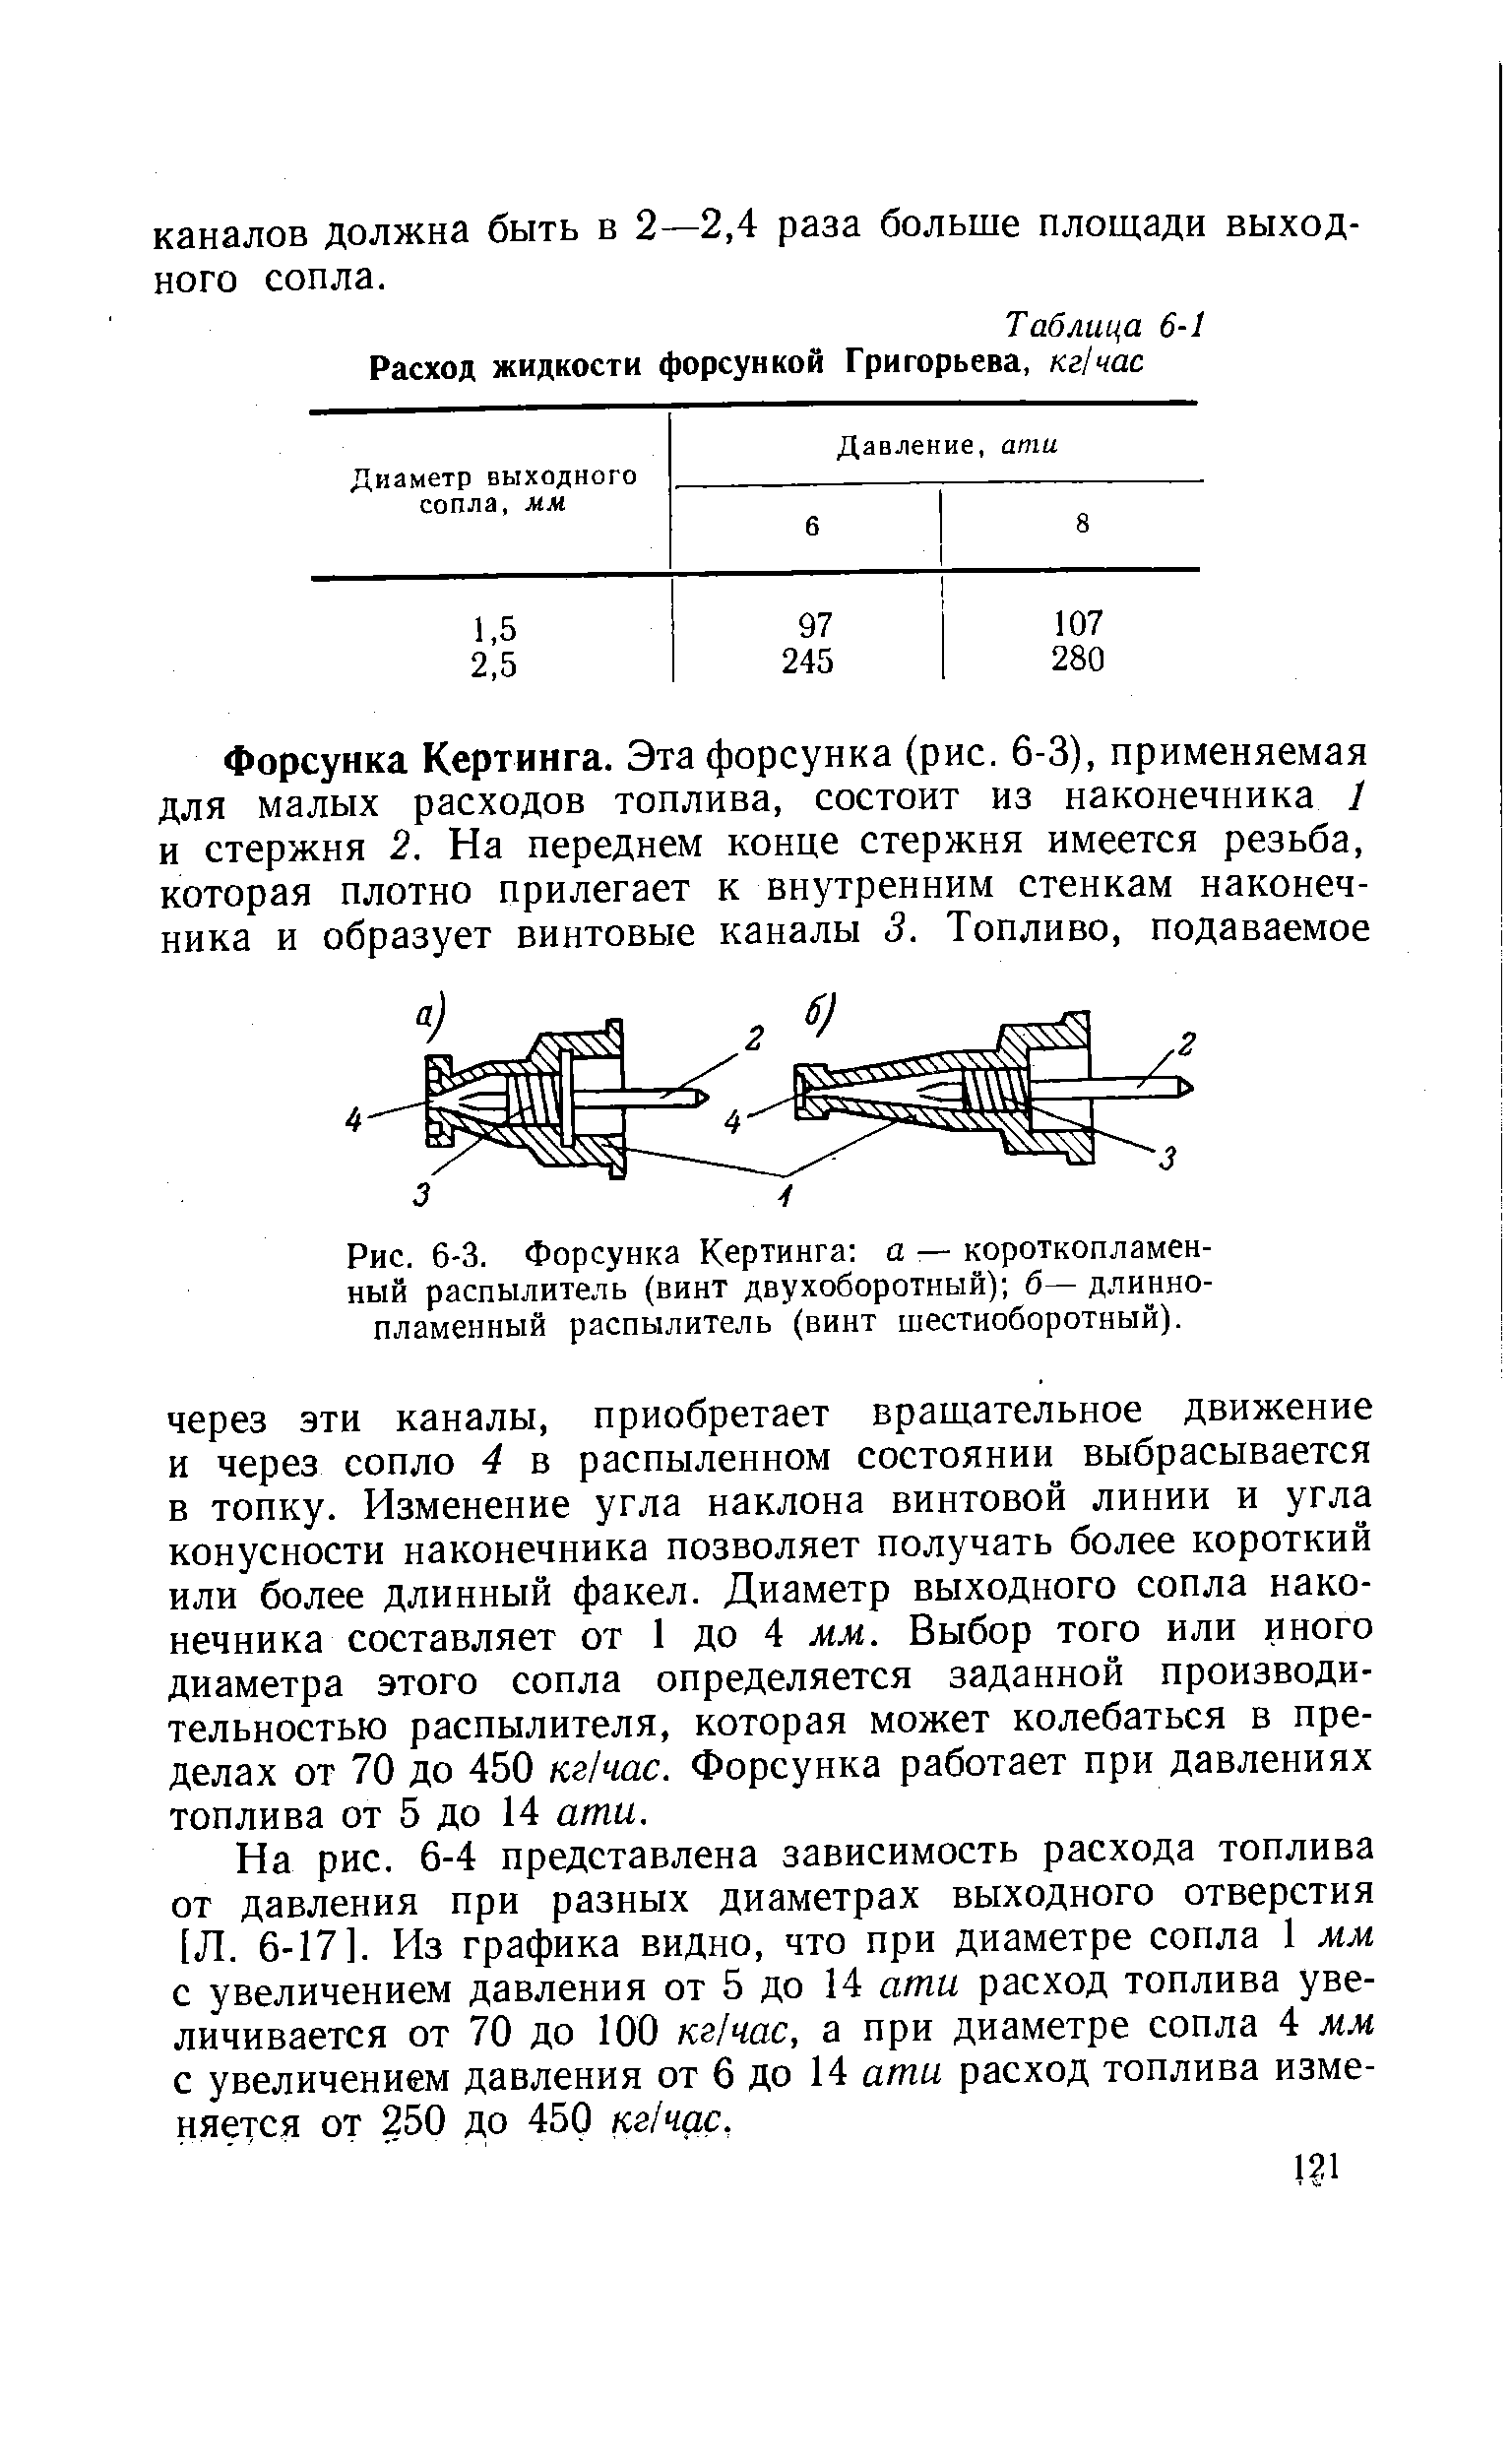 Таблица 6-1 Расход жидкости форсункой Григорьева, кгЫас
